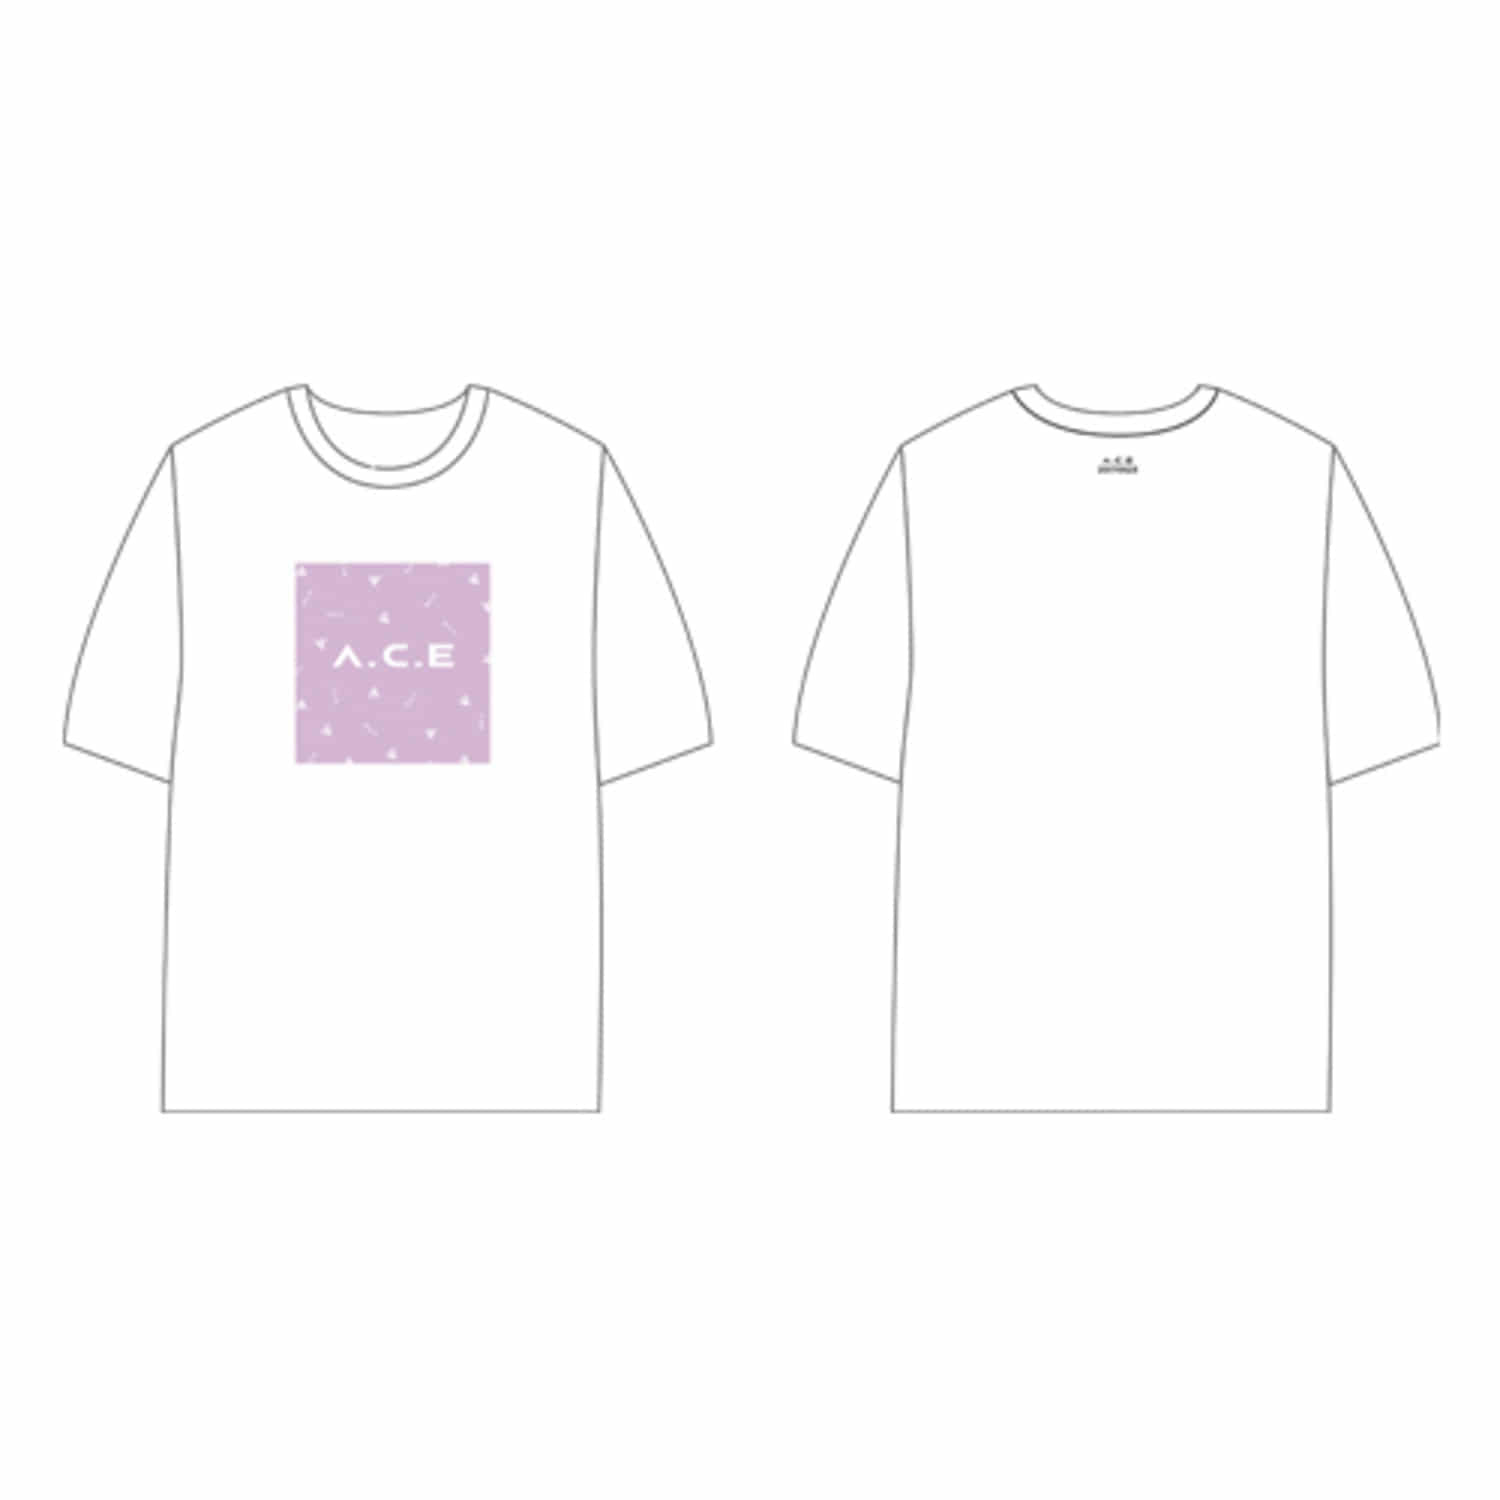 A.C.E (에이스) - OFFICIAL GOODS [티셔츠 / T-shirt]